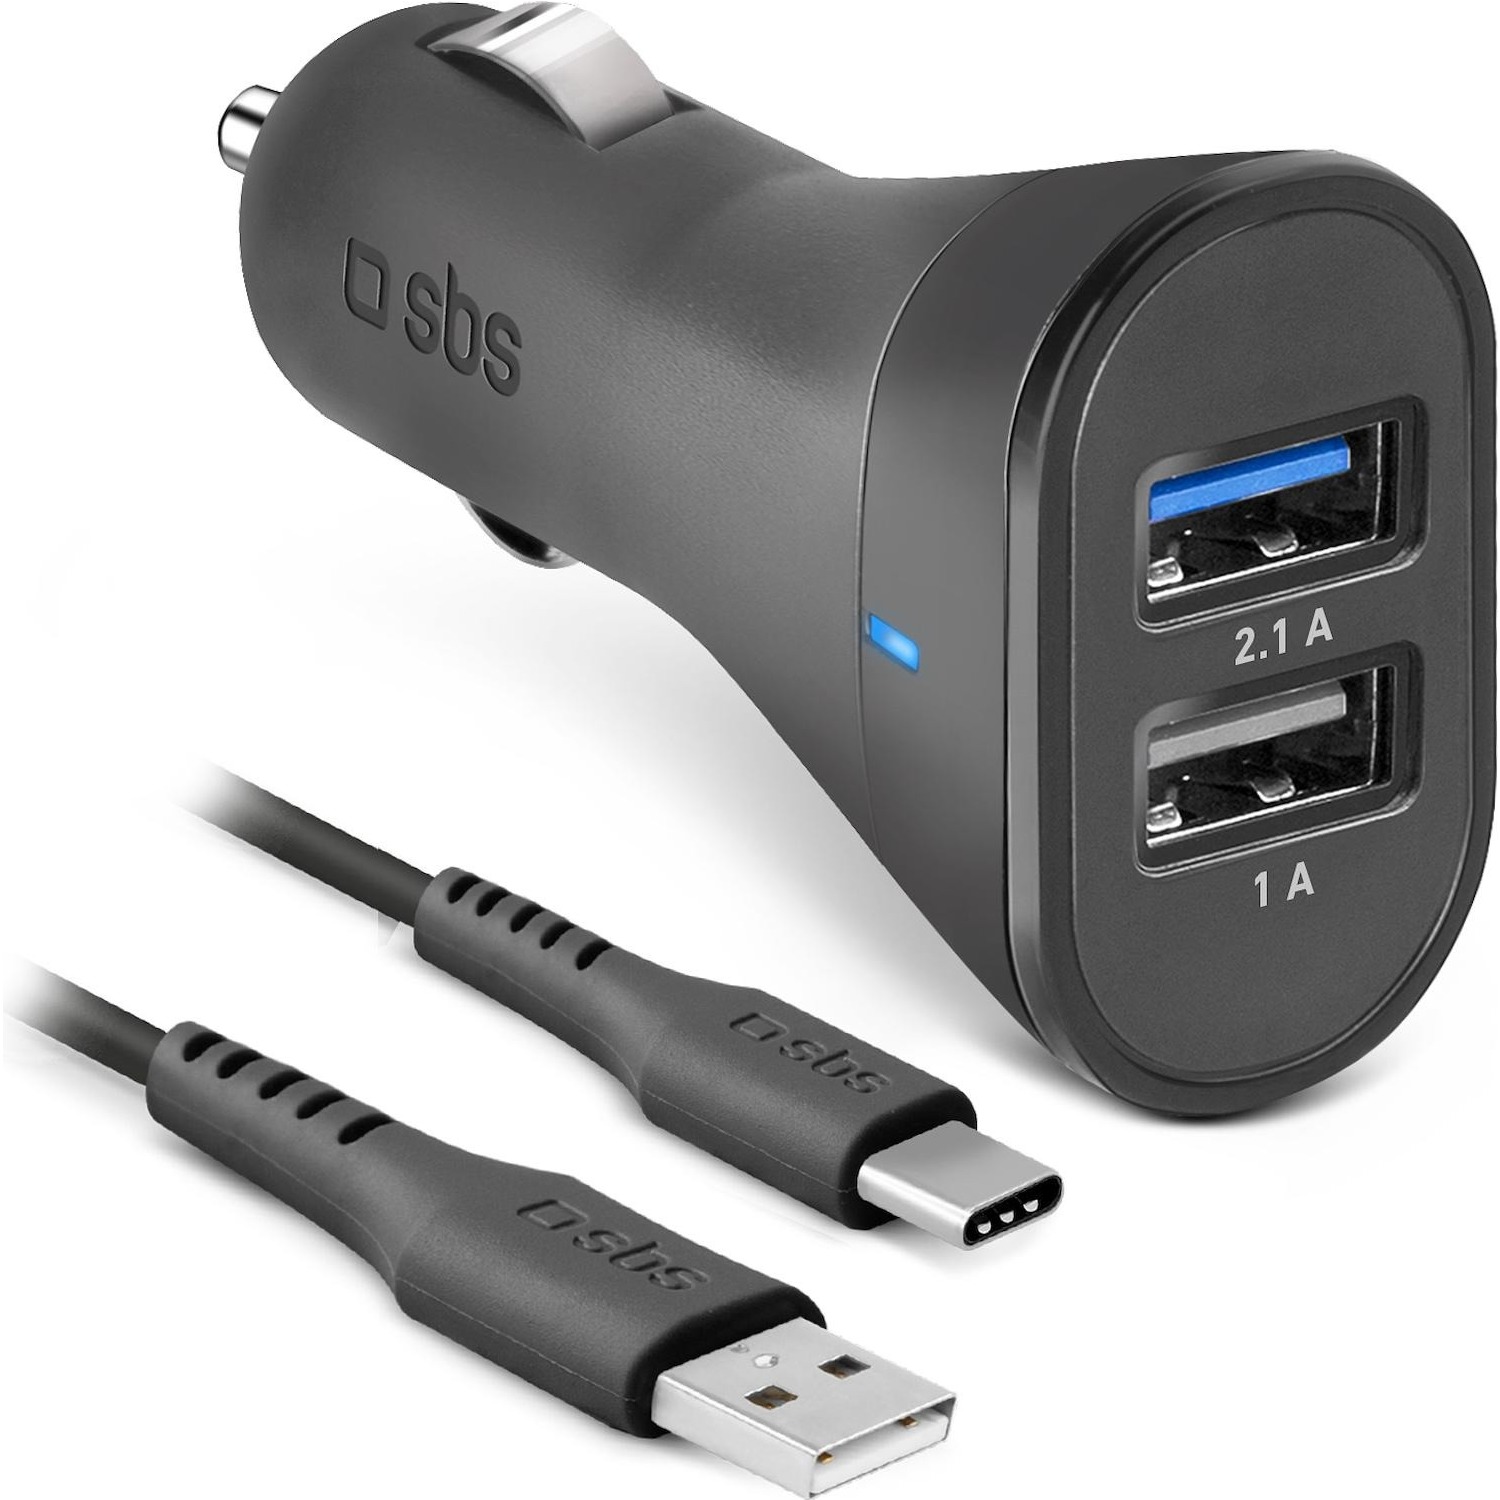 Immagine per Kit SBS caricabatterie da auto 12/24V 2100 mAh fast charge 2 USB + cavo USB Type-C colore nero da DIMOStore